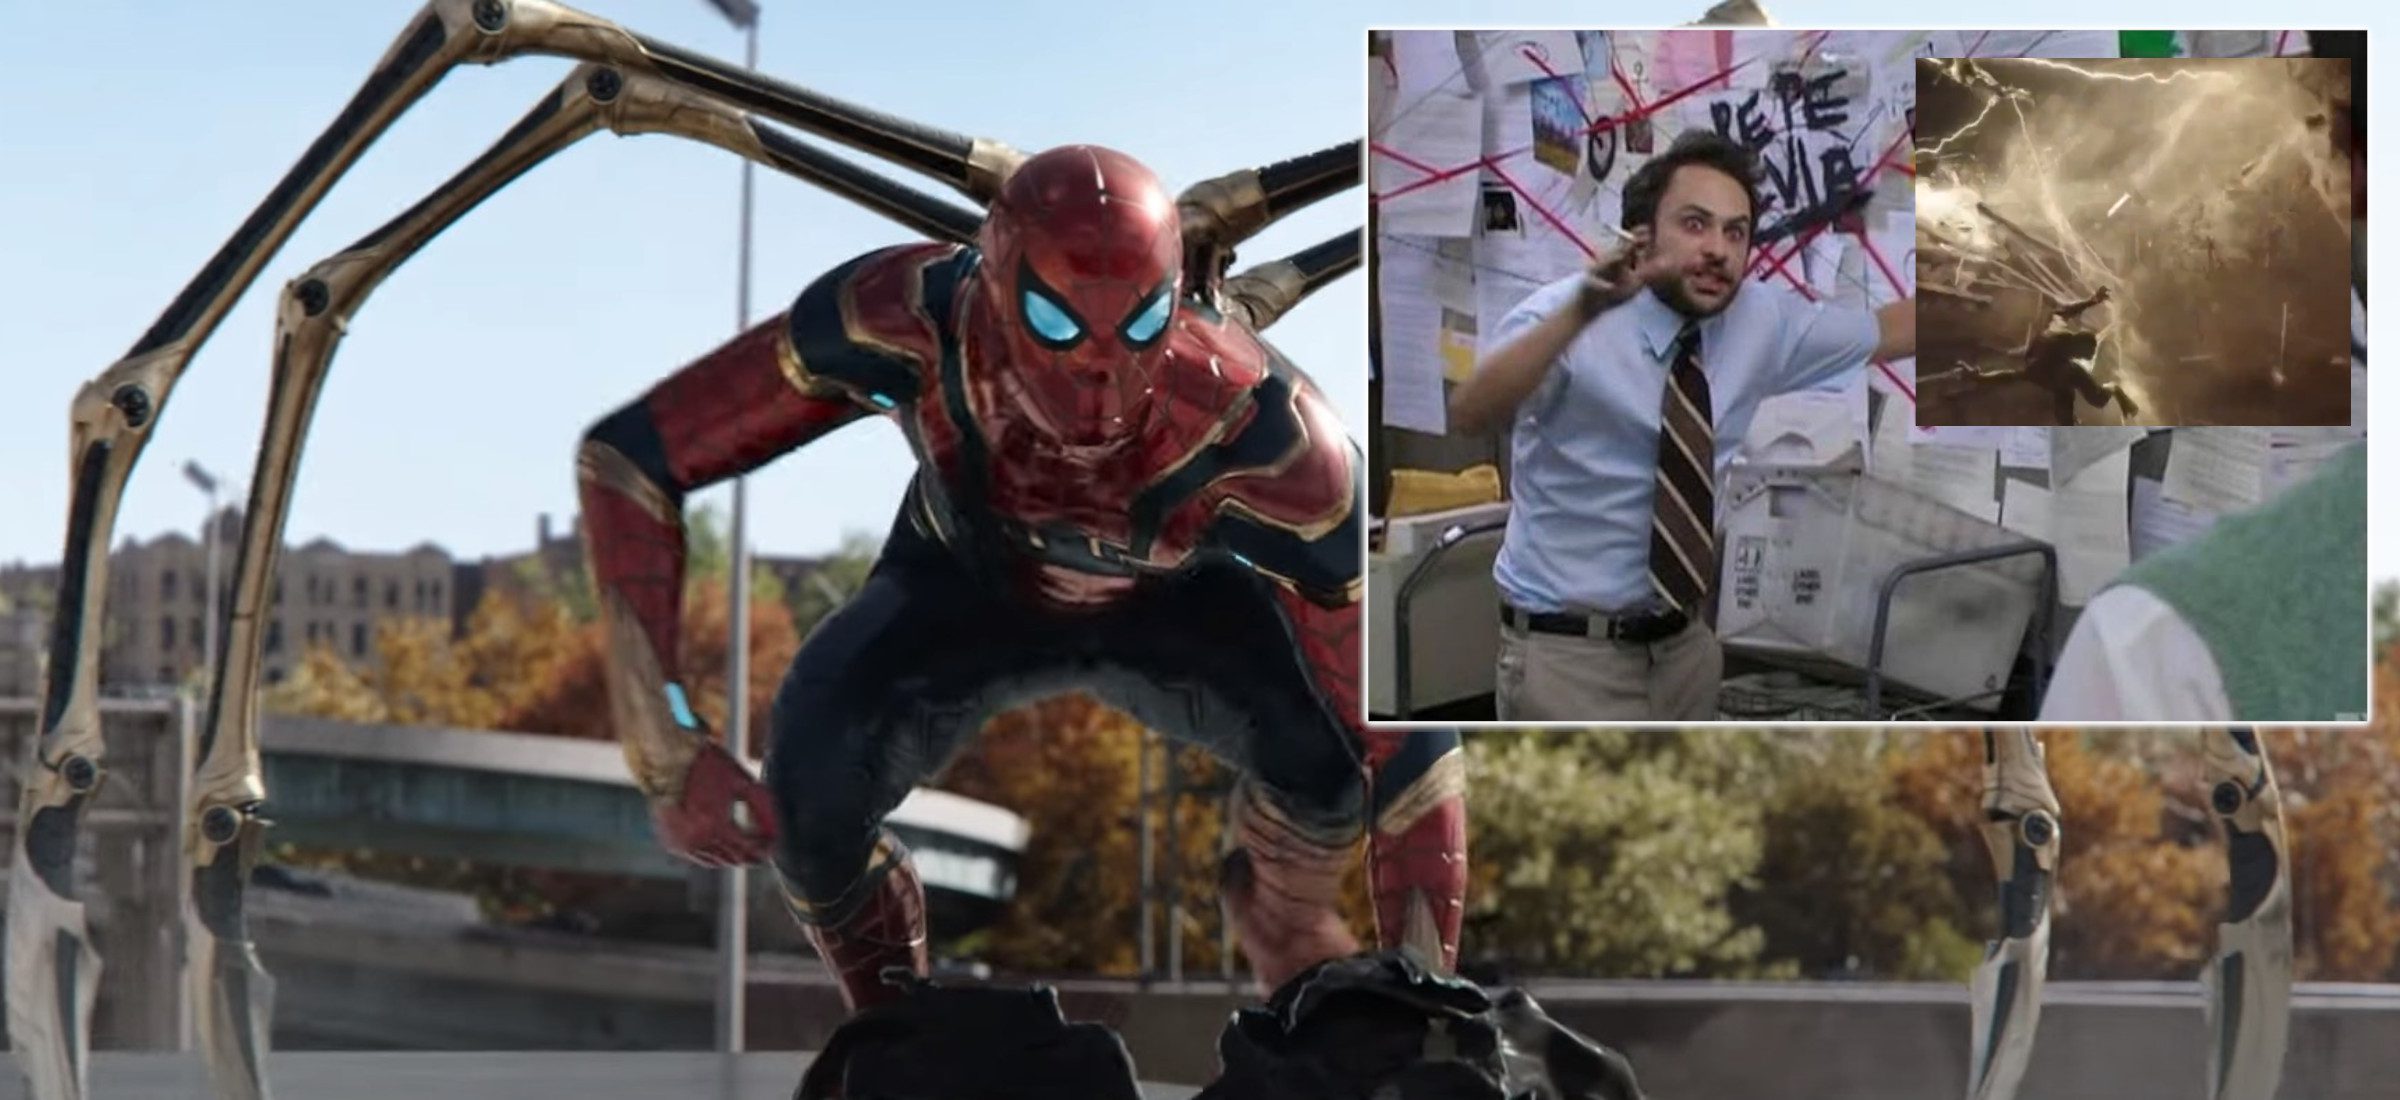 Maguire und Garfield wurden aus dem neuen Trailer gelöscht "Spider Man"? Fans feuerten auf der Bühne mit Lizard 144